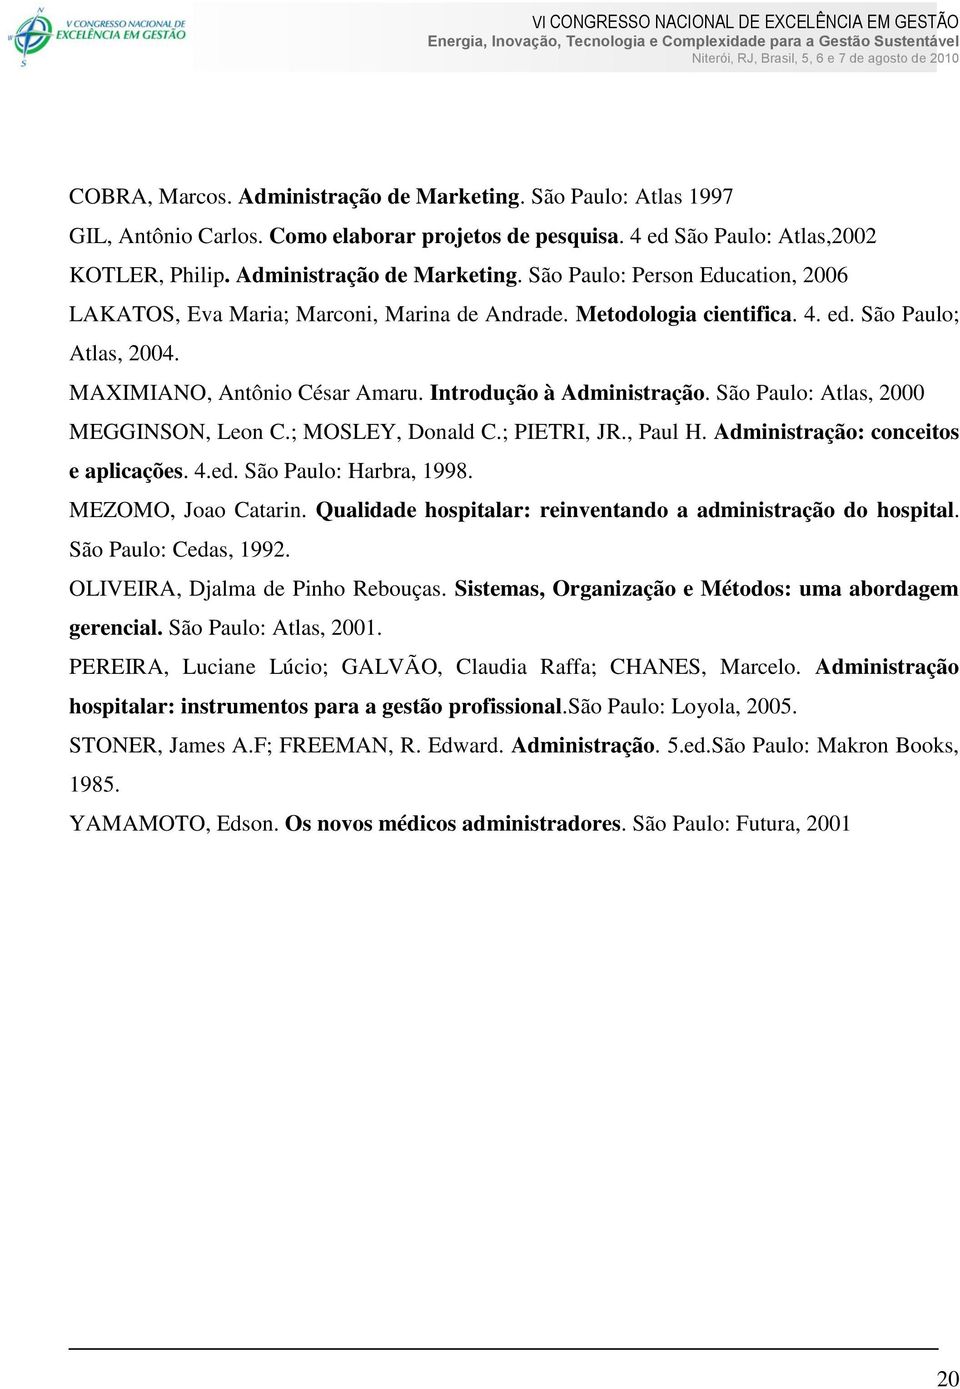 Administração: conceitos e aplicações. 4.ed. São Paulo: Harbra, 1998. MEZOMO, Joao Catarin. Qualidade hospitalar: reinventando a administração do hospital. São Paulo: Cedas, 1992.